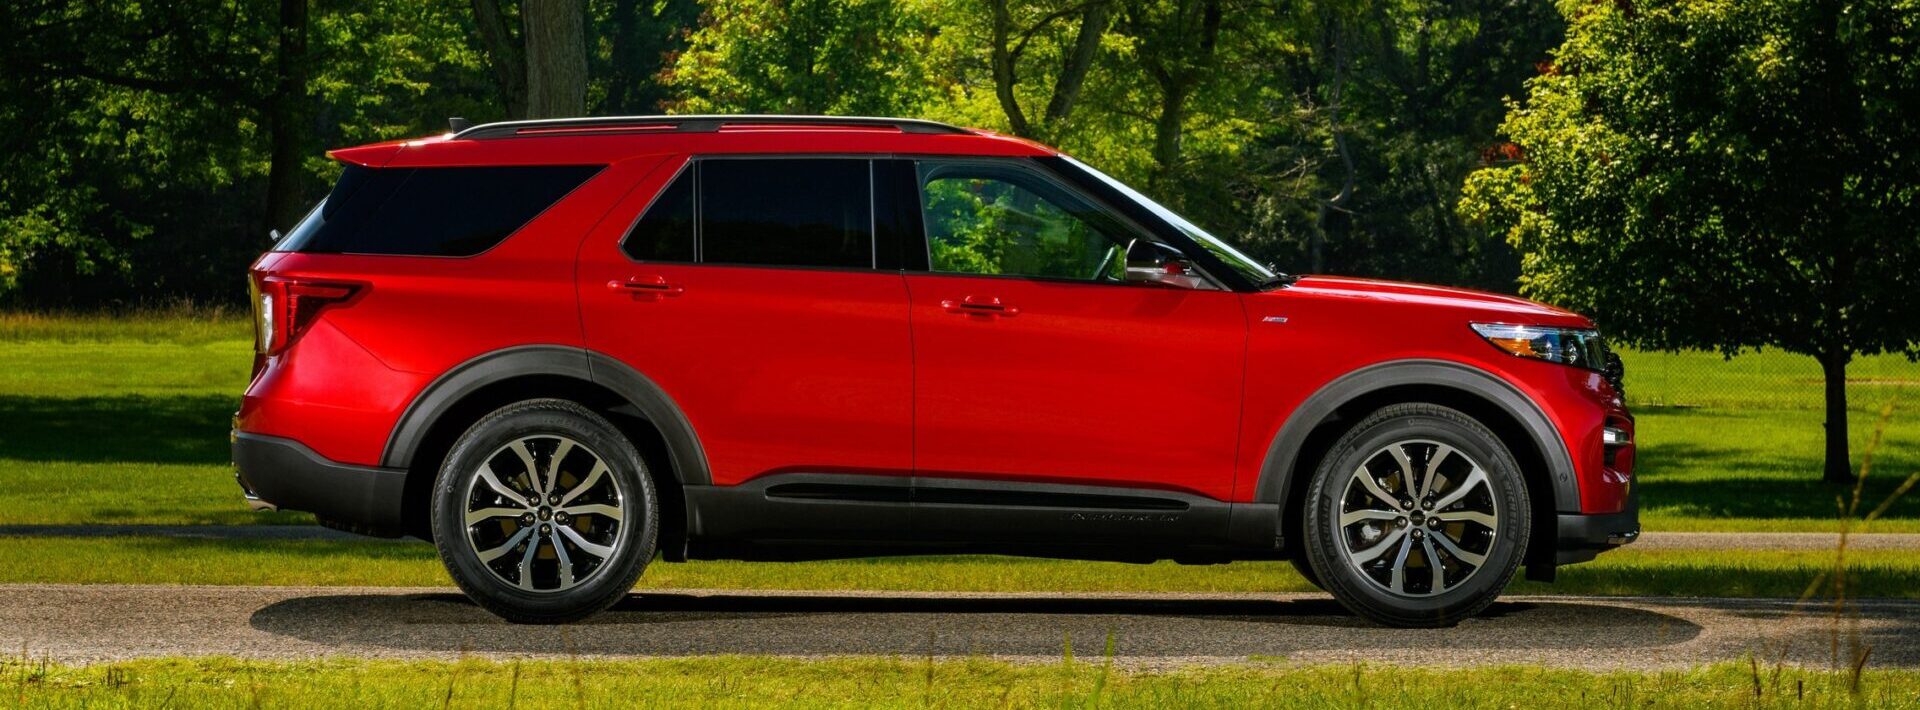 Система парковки Ford Explorer может быть испорченной на моделях с турбонаддувом 2,3 л